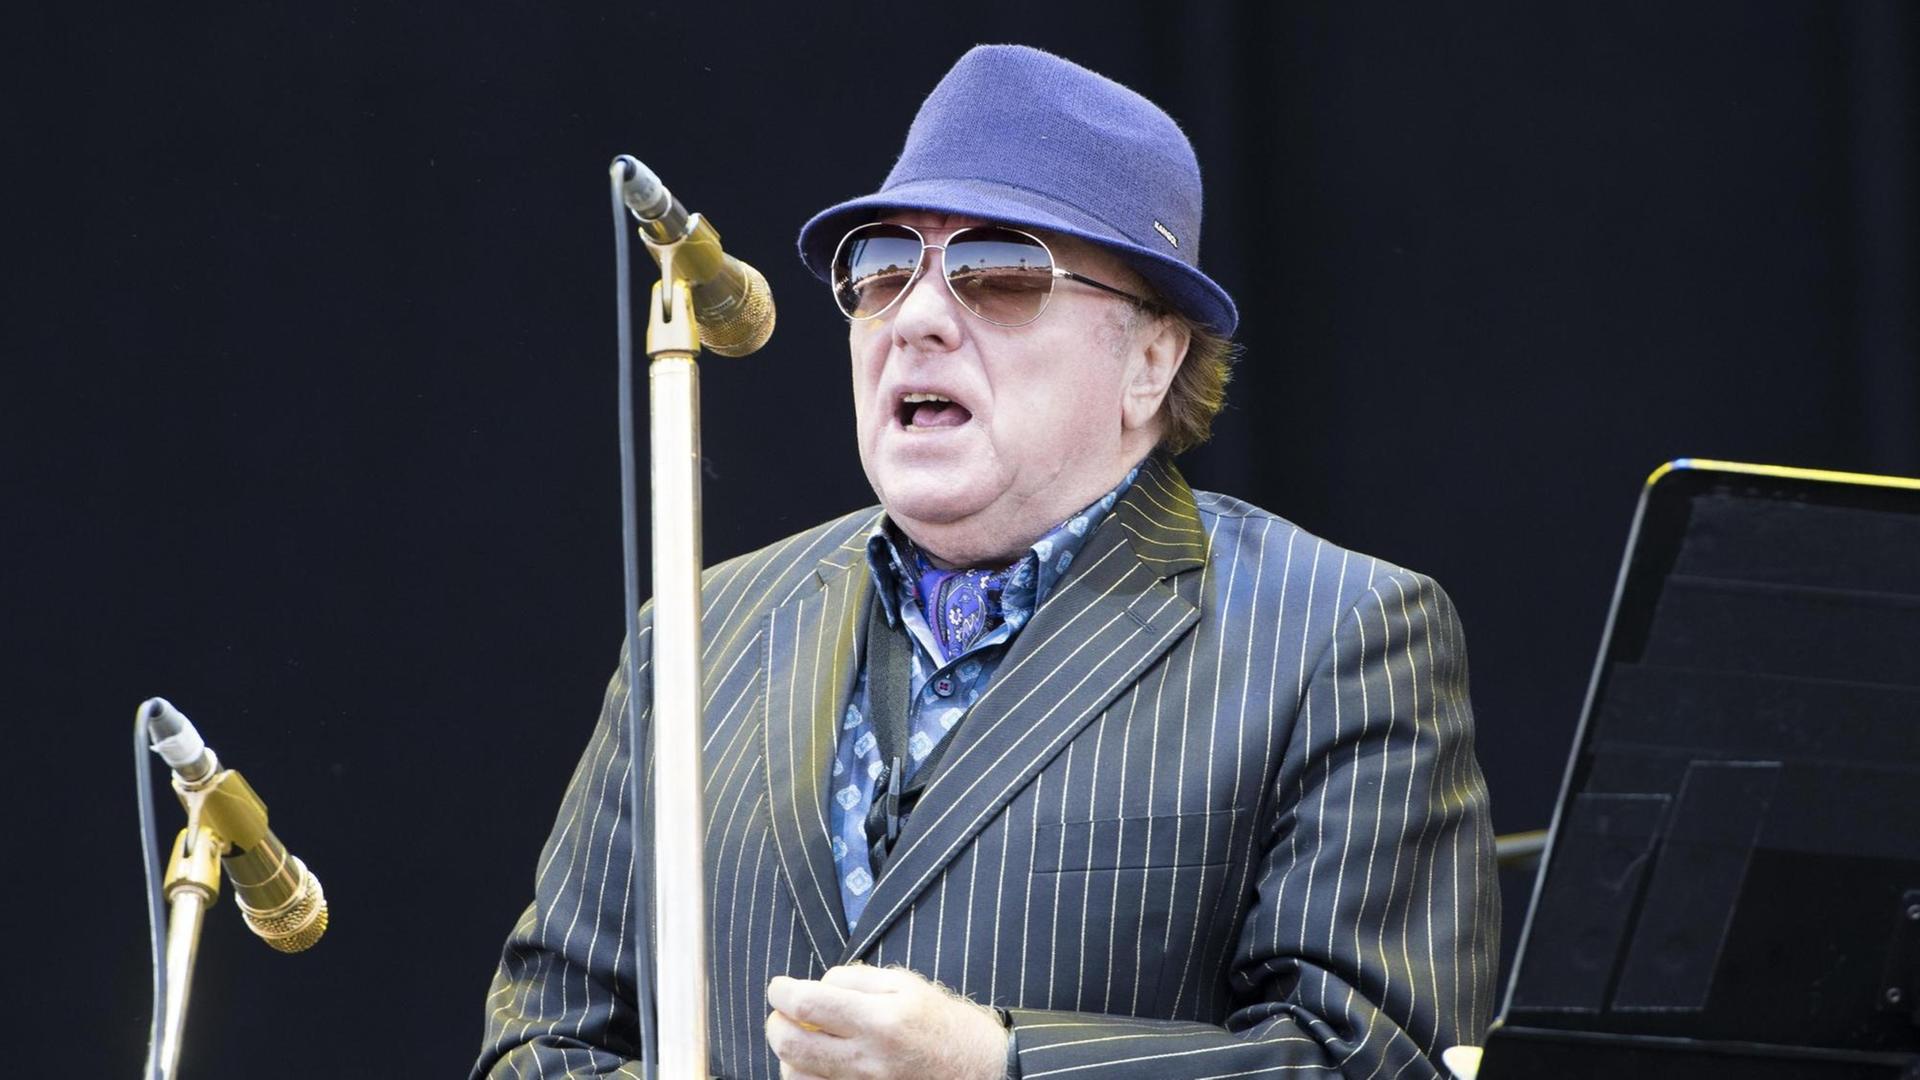 Der irische Musiker Van Morrison steht in Anzug und Hut auf einer Bühne, vor ihm ein goldfarbenes Mikrofon.